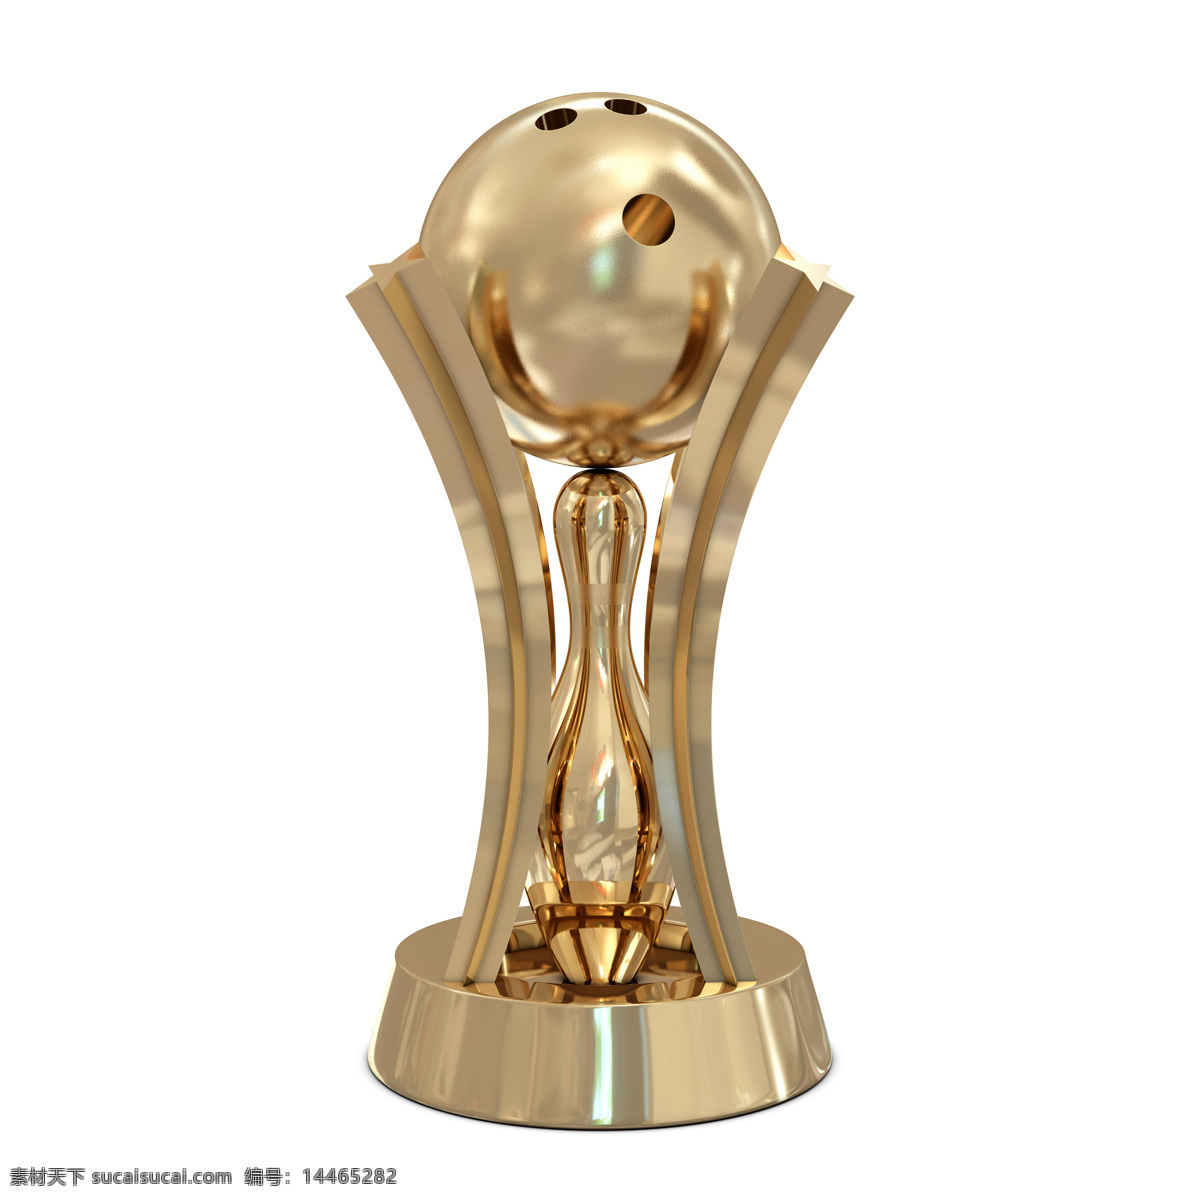 金色 保龄球 奖杯 瓶子 保龄球瓶子 保龄球摄影 运动 打保龄球 体育运动 生活百科